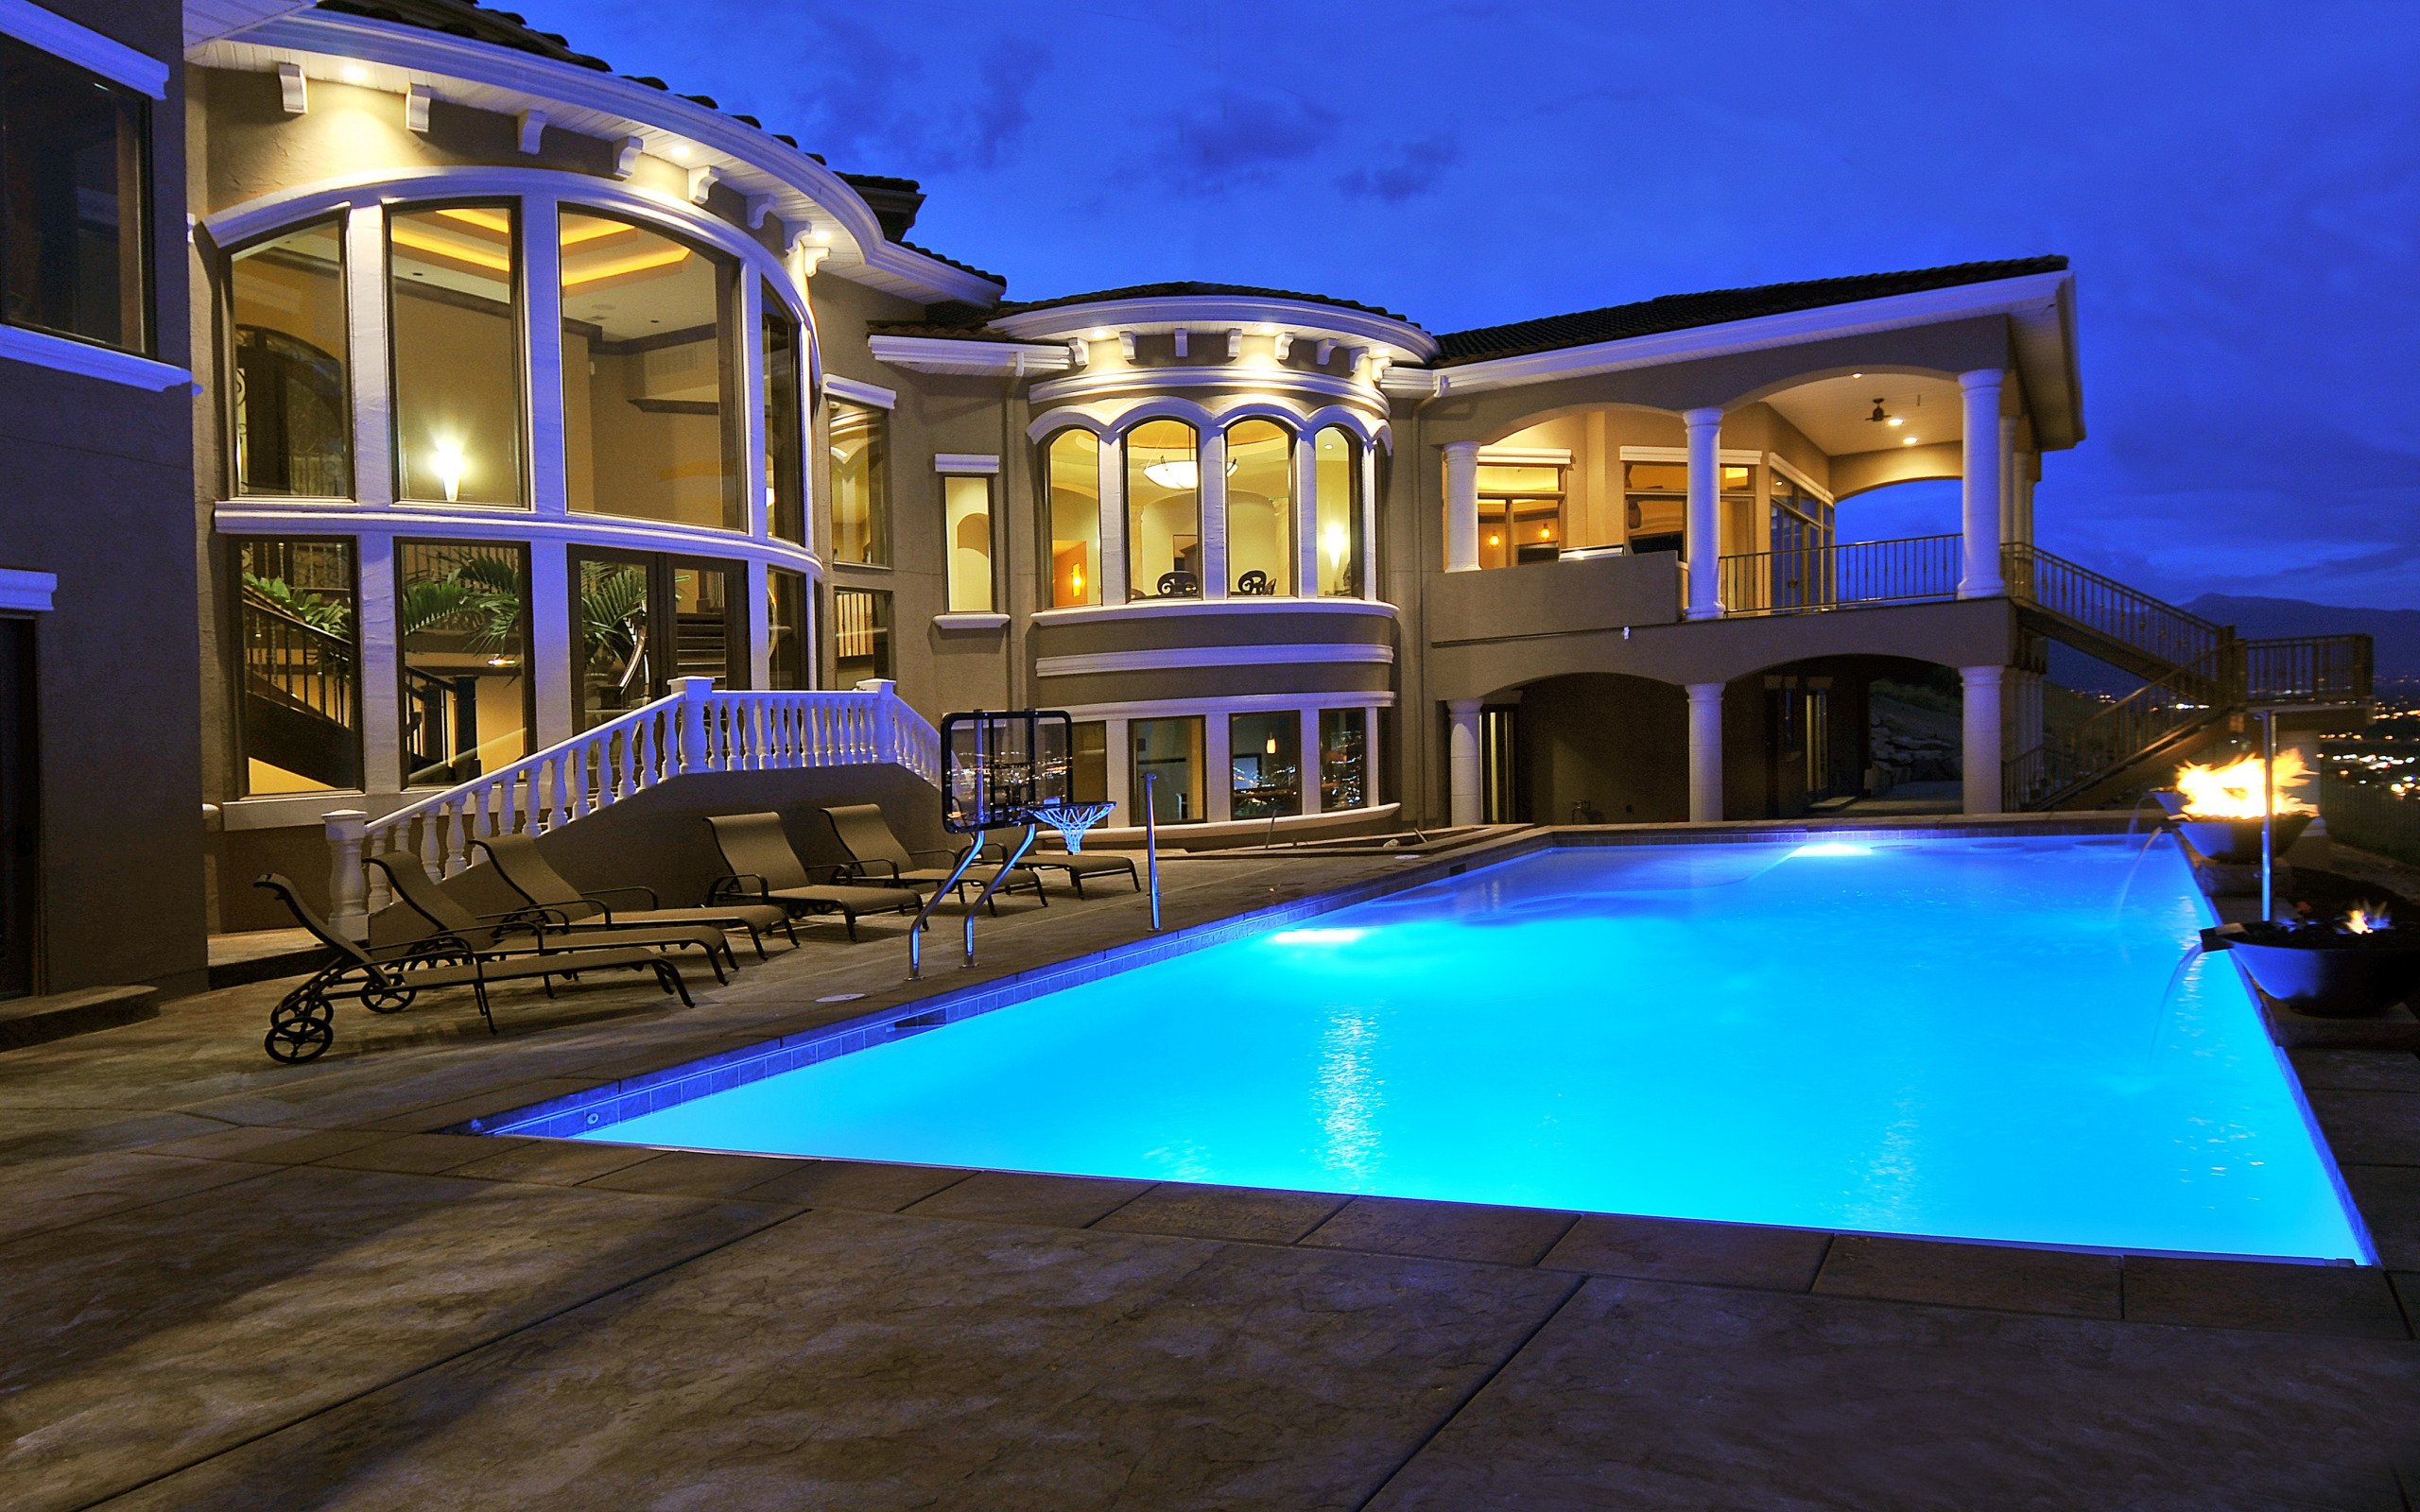 Фото большого дома с бассейном